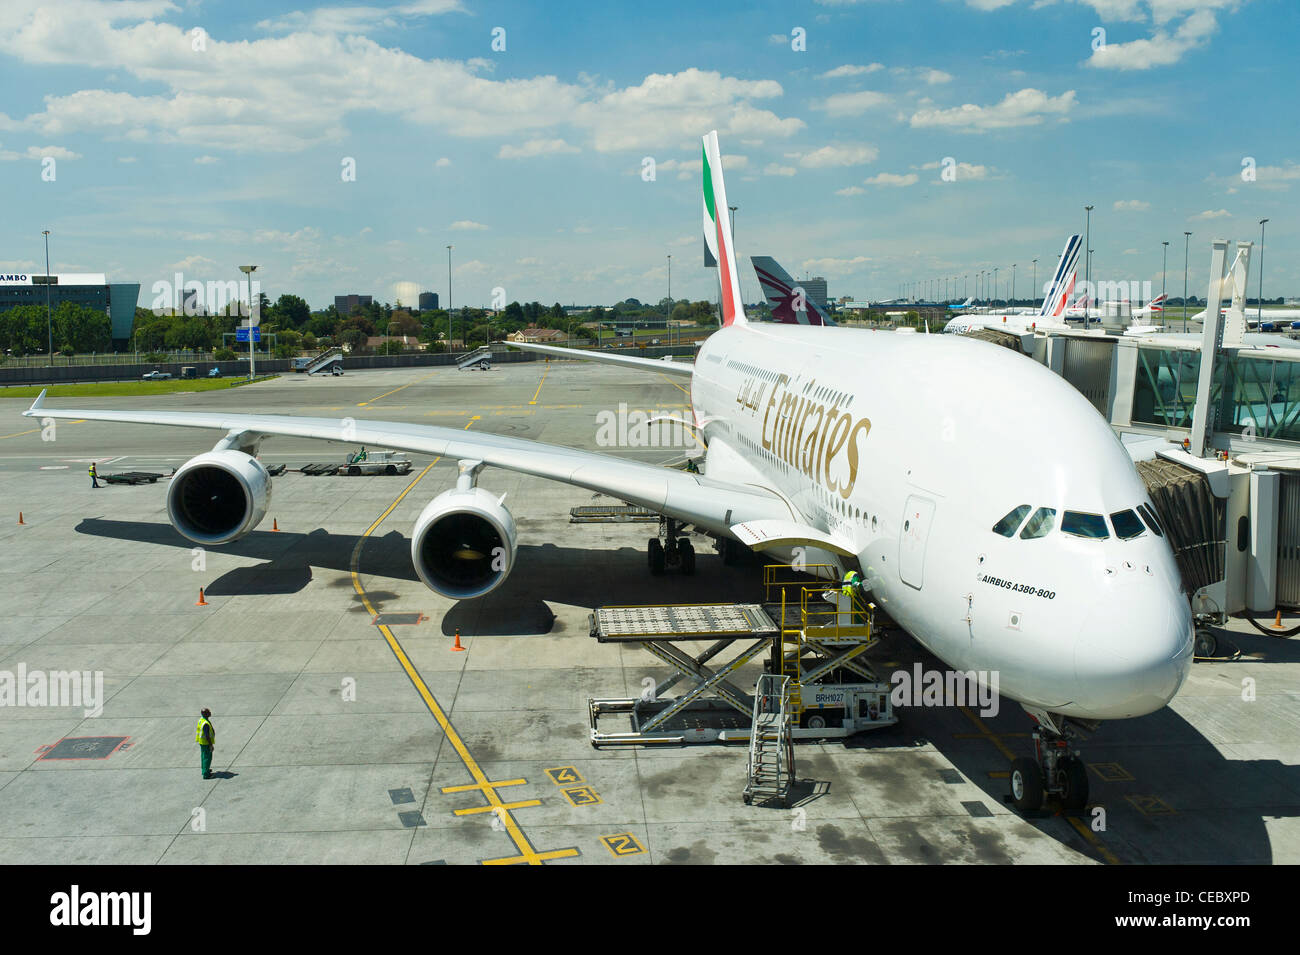 Airbus A380 800 d'Emirates airline à O.R. L'aéroport international OR Tambo (ORTIA) à Johannesburg, Afrique du Sud Banque D'Images